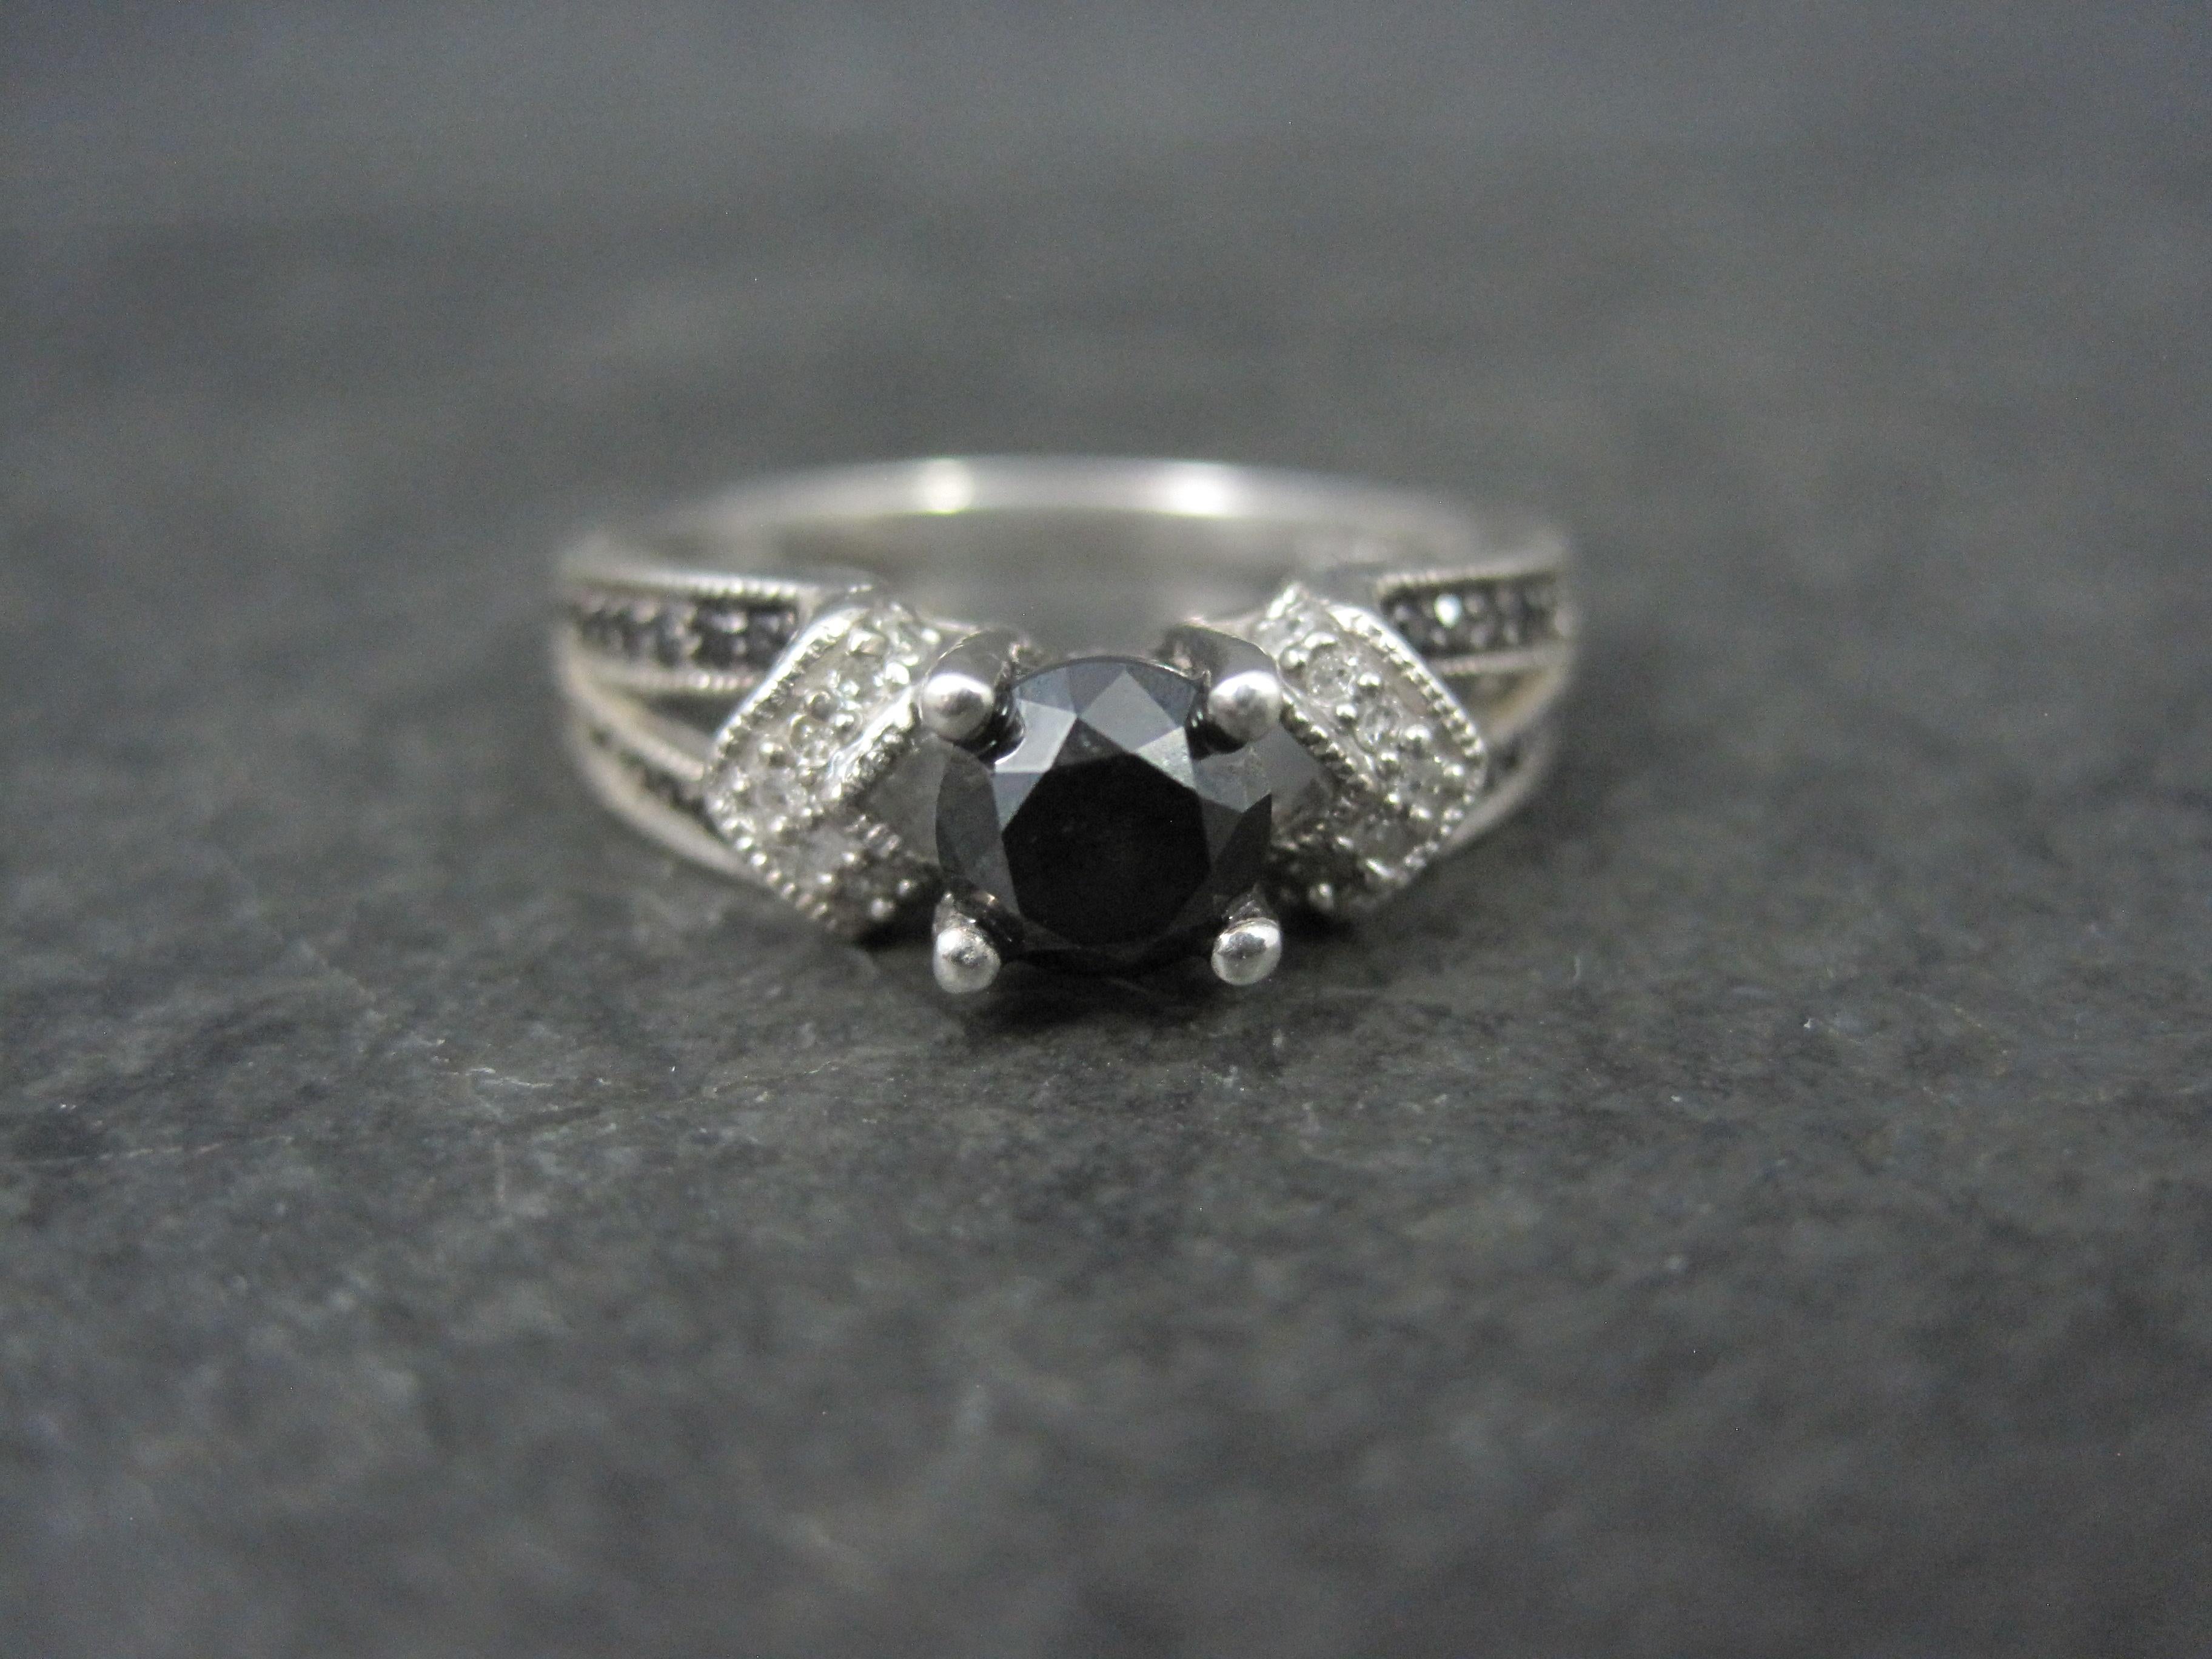 Dieser schöne Verlobungsring ist aus Sterlingsilber.
Er ist mit einem schwarzen Diamanten von 0,50 Karat im Rundschliff und geschätzten 0,30 Karat an schwarzen und weißen Diamanten besetzt.

Die Vorderseite dieses Rings misst 1/4 Zoll von Norden